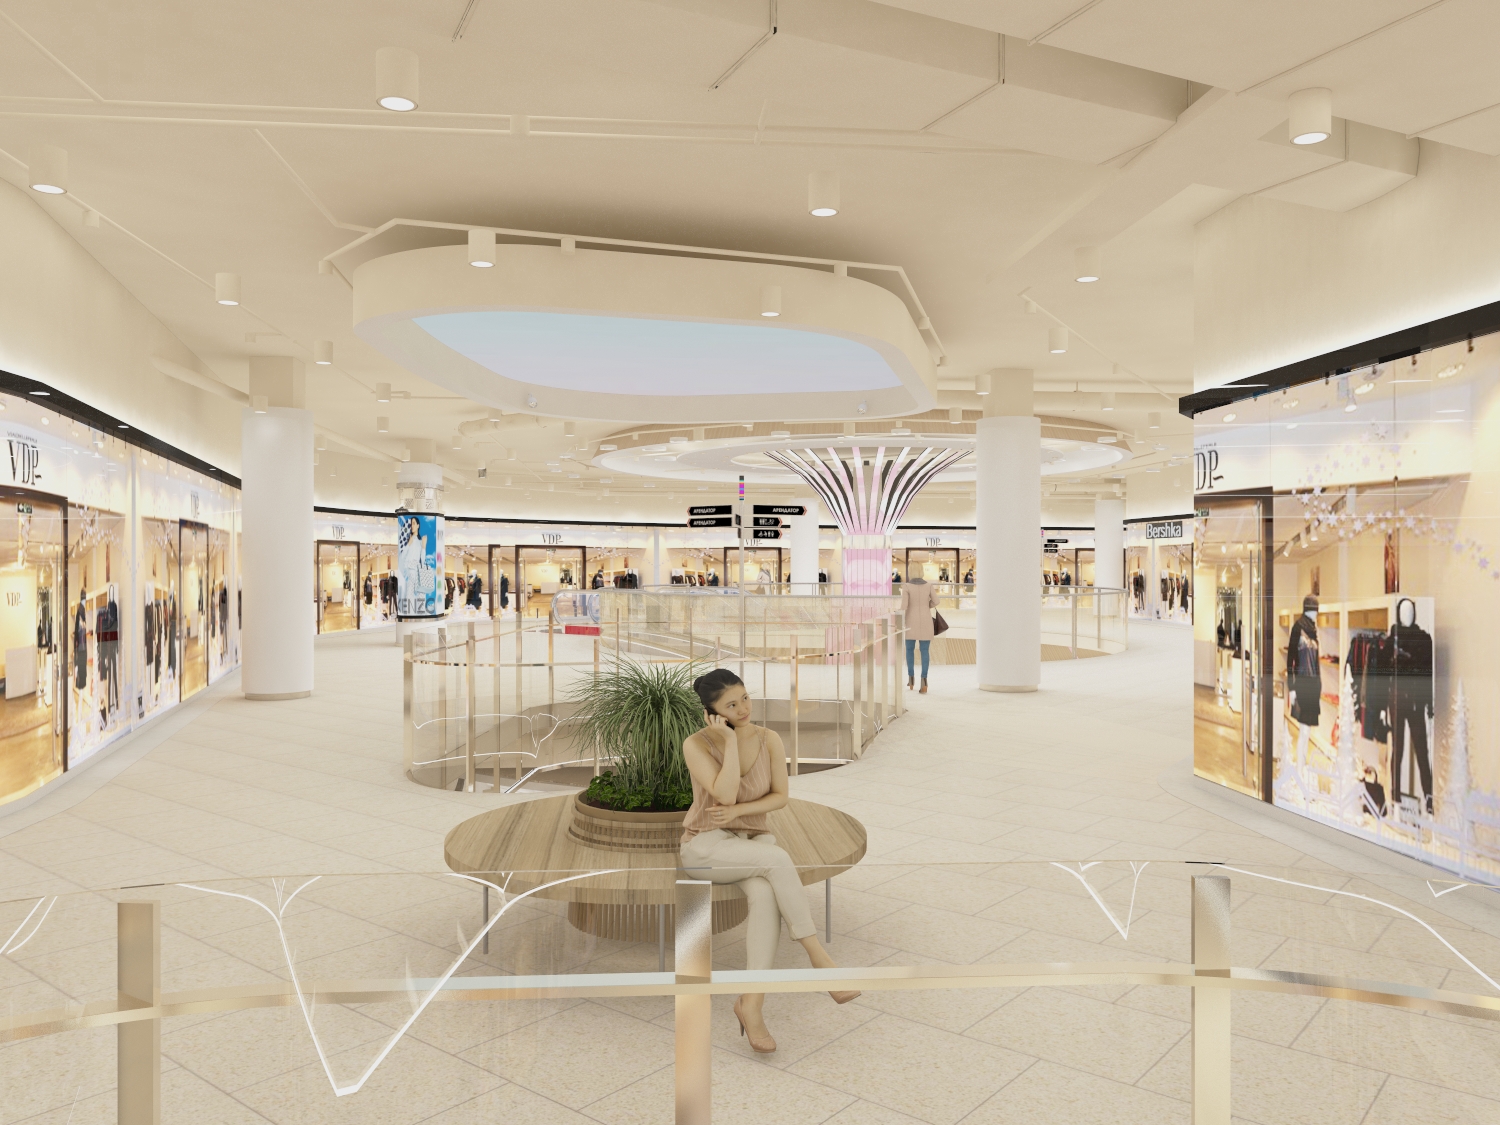 Концепция, проект торгового центра, дизайн-проект интерьера торгового центра "Z-ФОРТ" разработаны специалистами Kanayan Retail